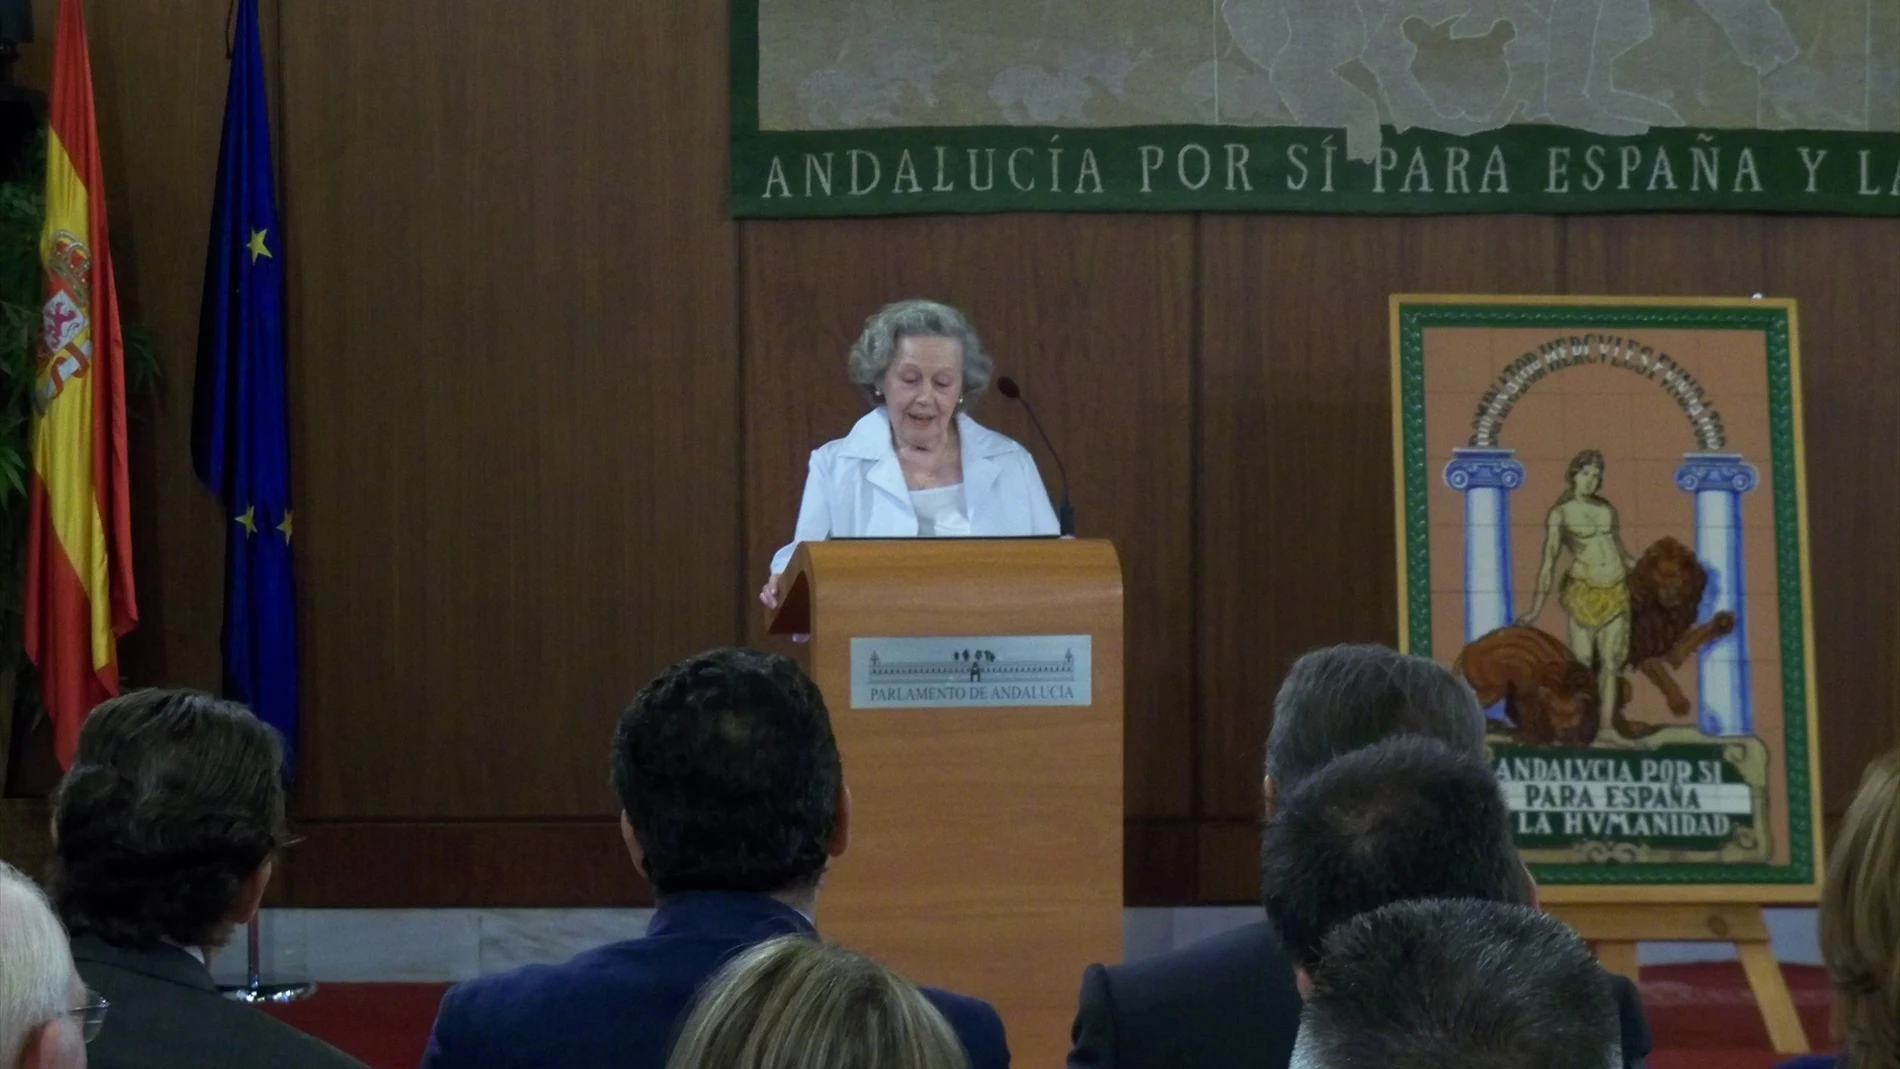 Fallece a los 93 años María Ángeles Infante, hija de Blas Infante y presidenta de su fundación